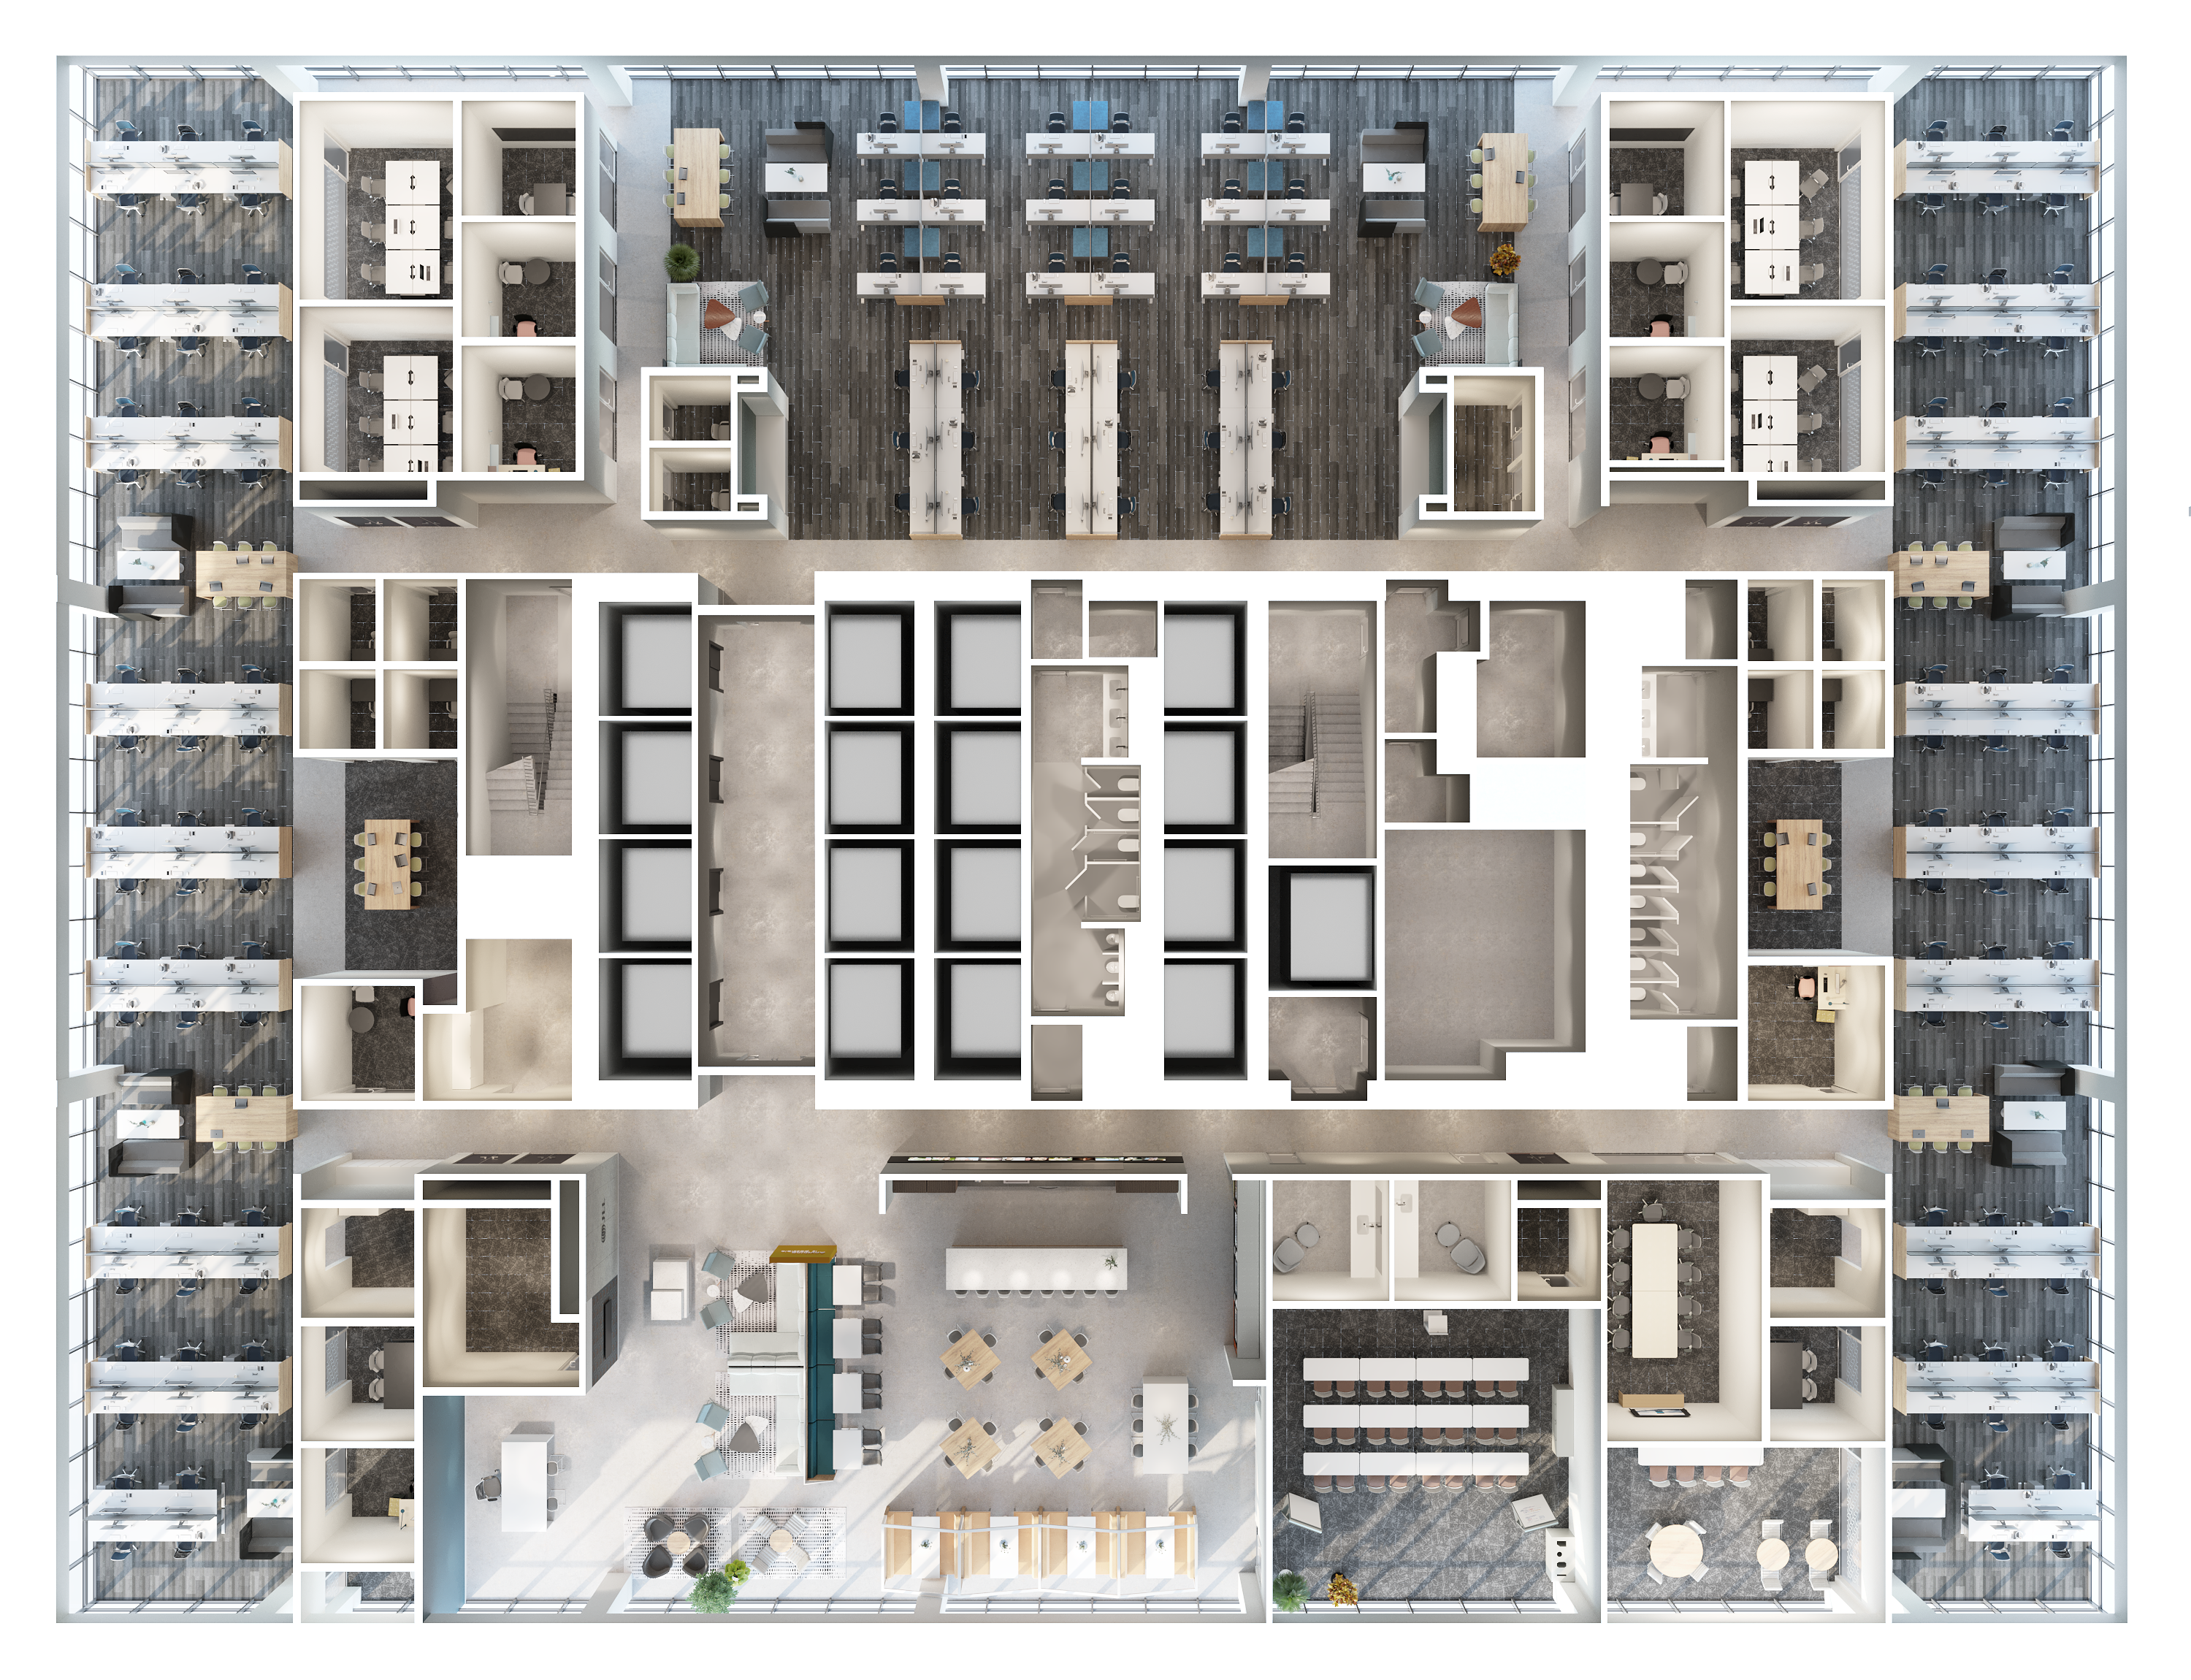 3D Floor Plan - Commercial Office